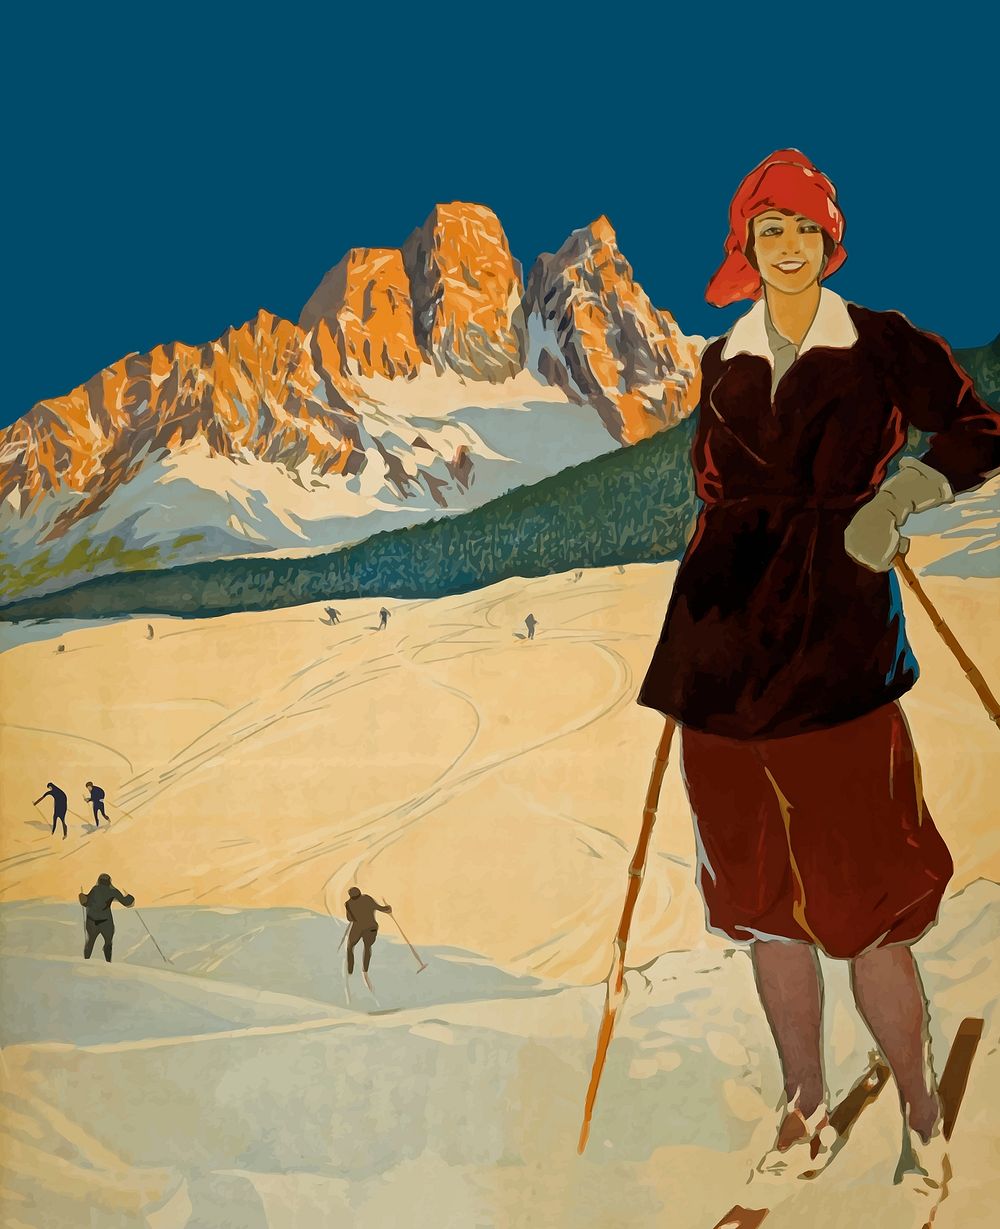 Ski travel  clip art psd. Free public domain CC0 image.